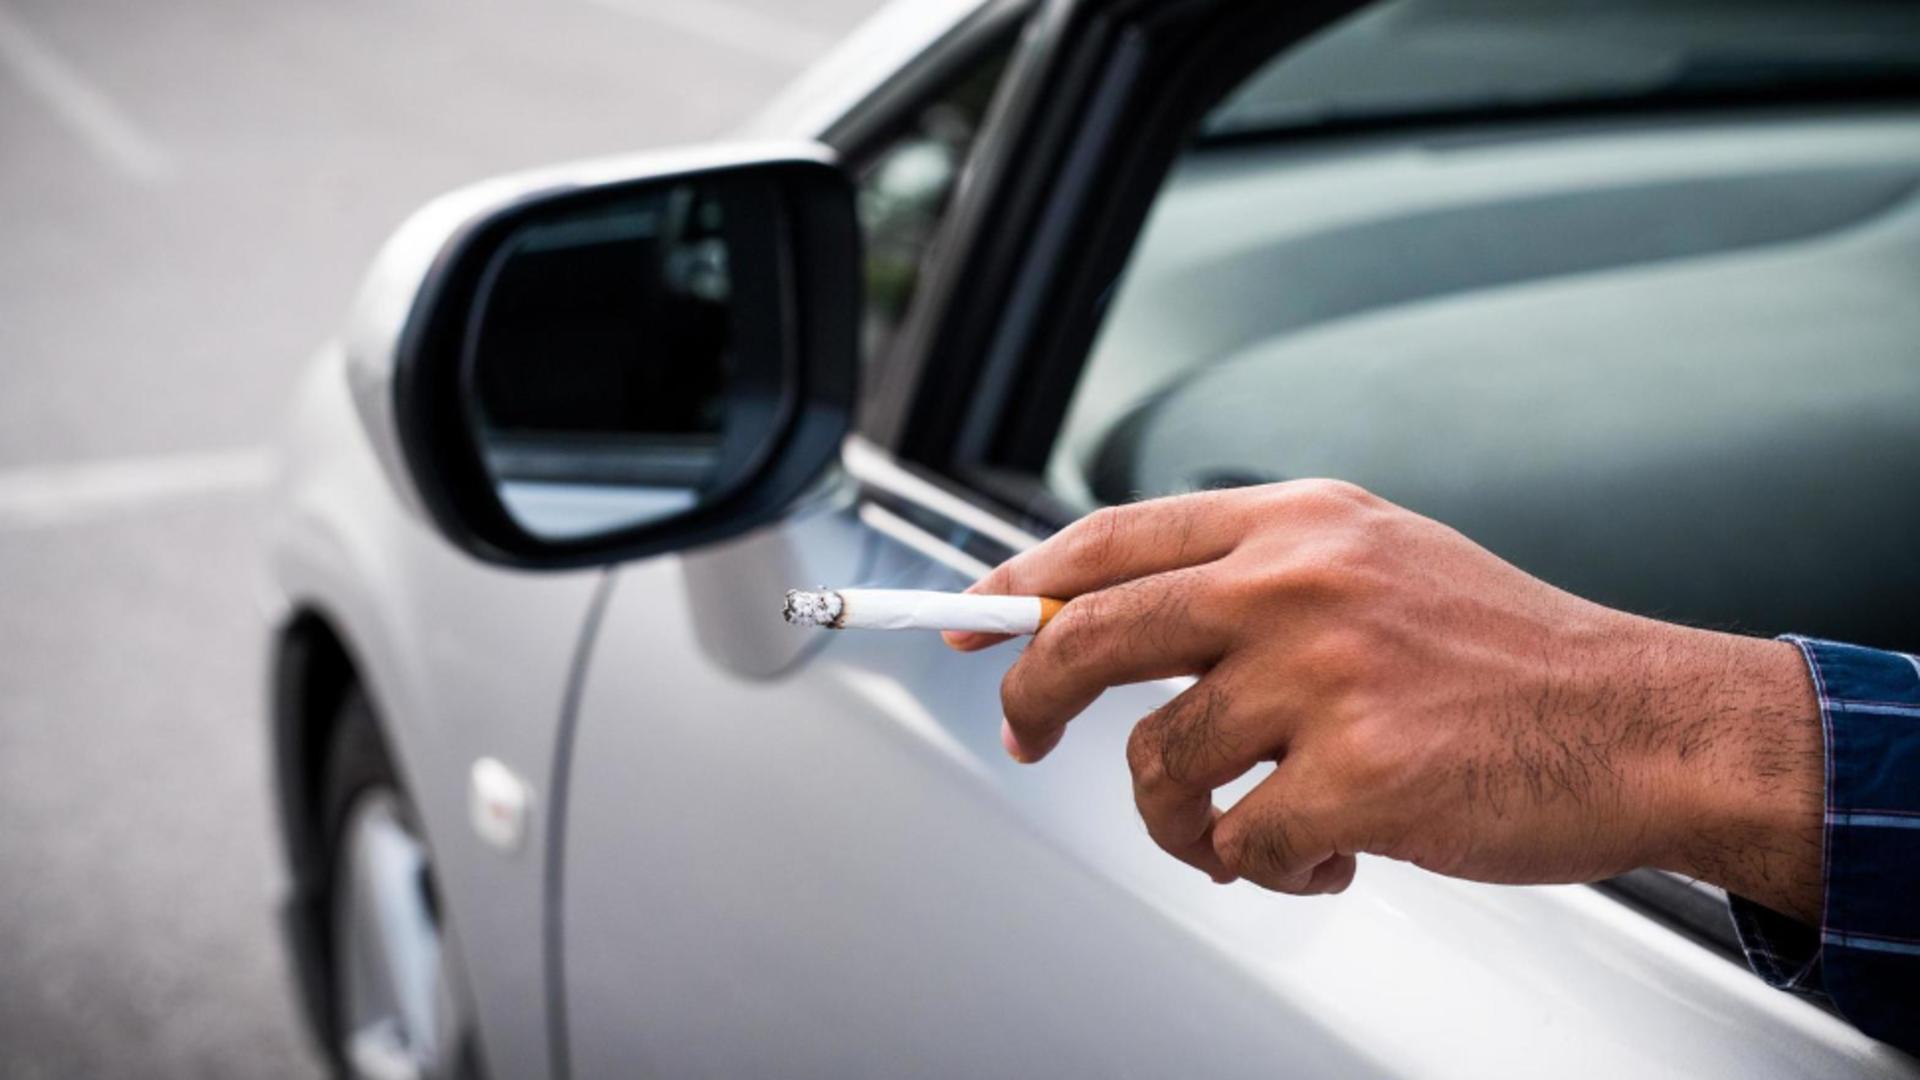 Aleșii pregătesc o nouă lovitură fumătorilor: Fumatul în mașina personală, în prezența copiilor, ar putea fi interzis!